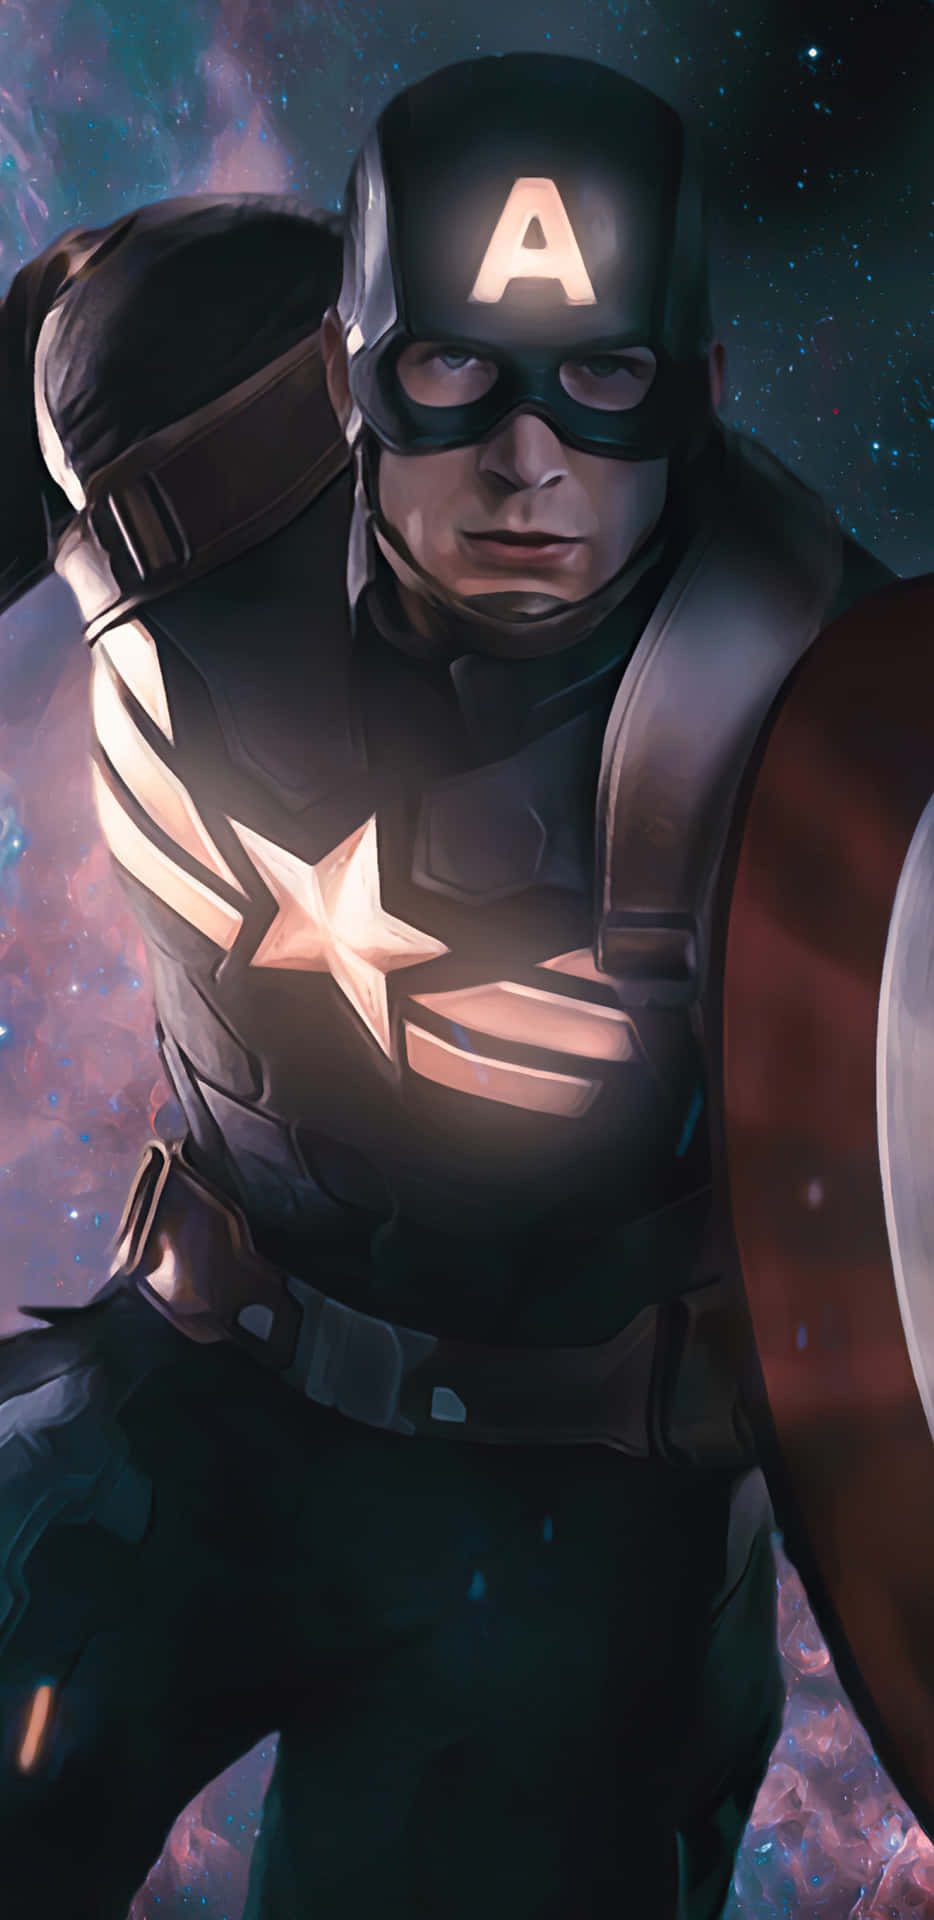 Pixel3xl Bakgrund Med Captain America Från Filmen Vintersoldaten.